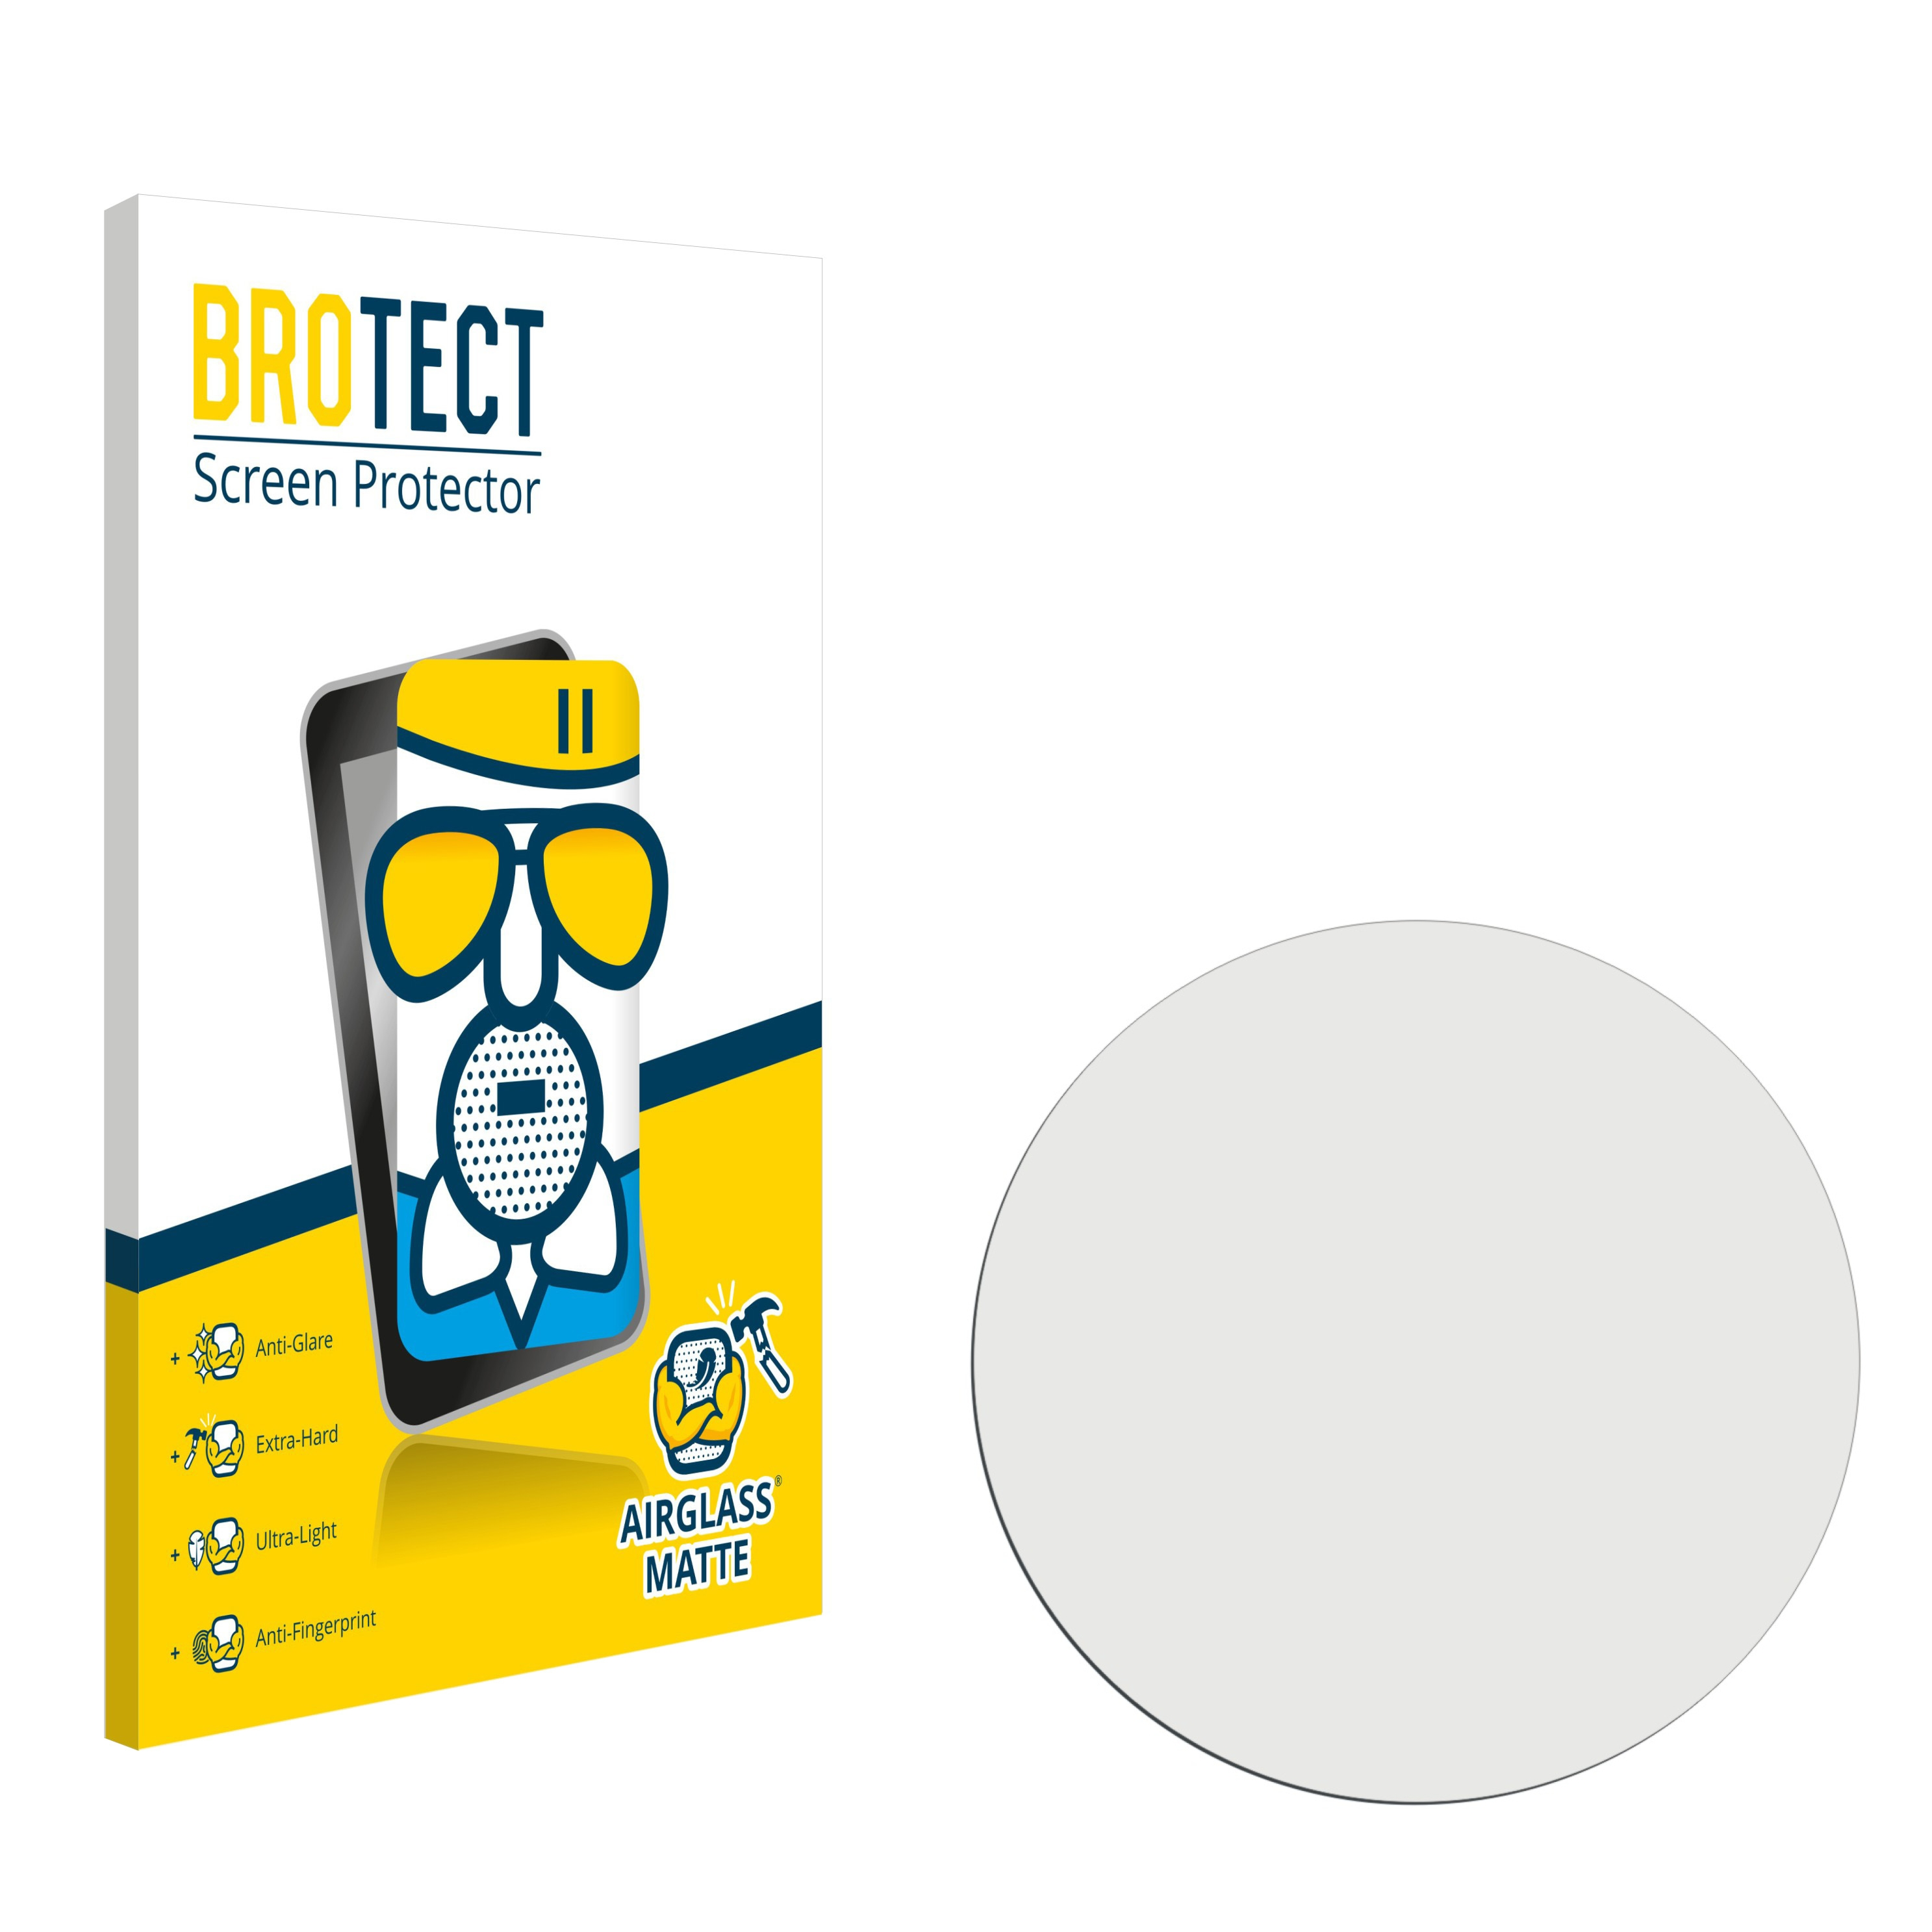 2) BROTECT Smartwatch Skagen Airglass Falster Schutzfolie(für matte